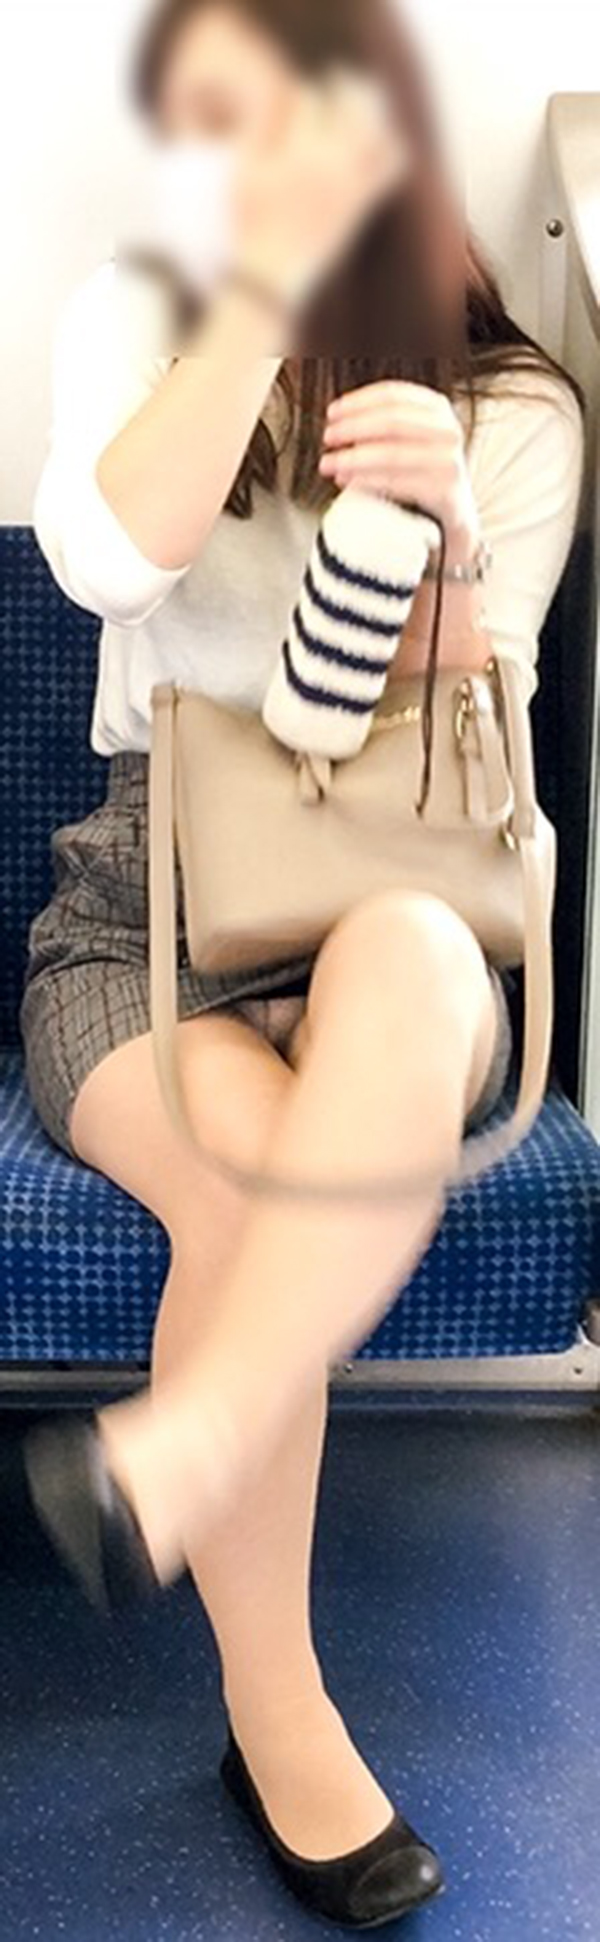 【電車内盗撮エロ画像】電車内でパンチラ、胸チラしている女子を盗撮したったｗｗ 43